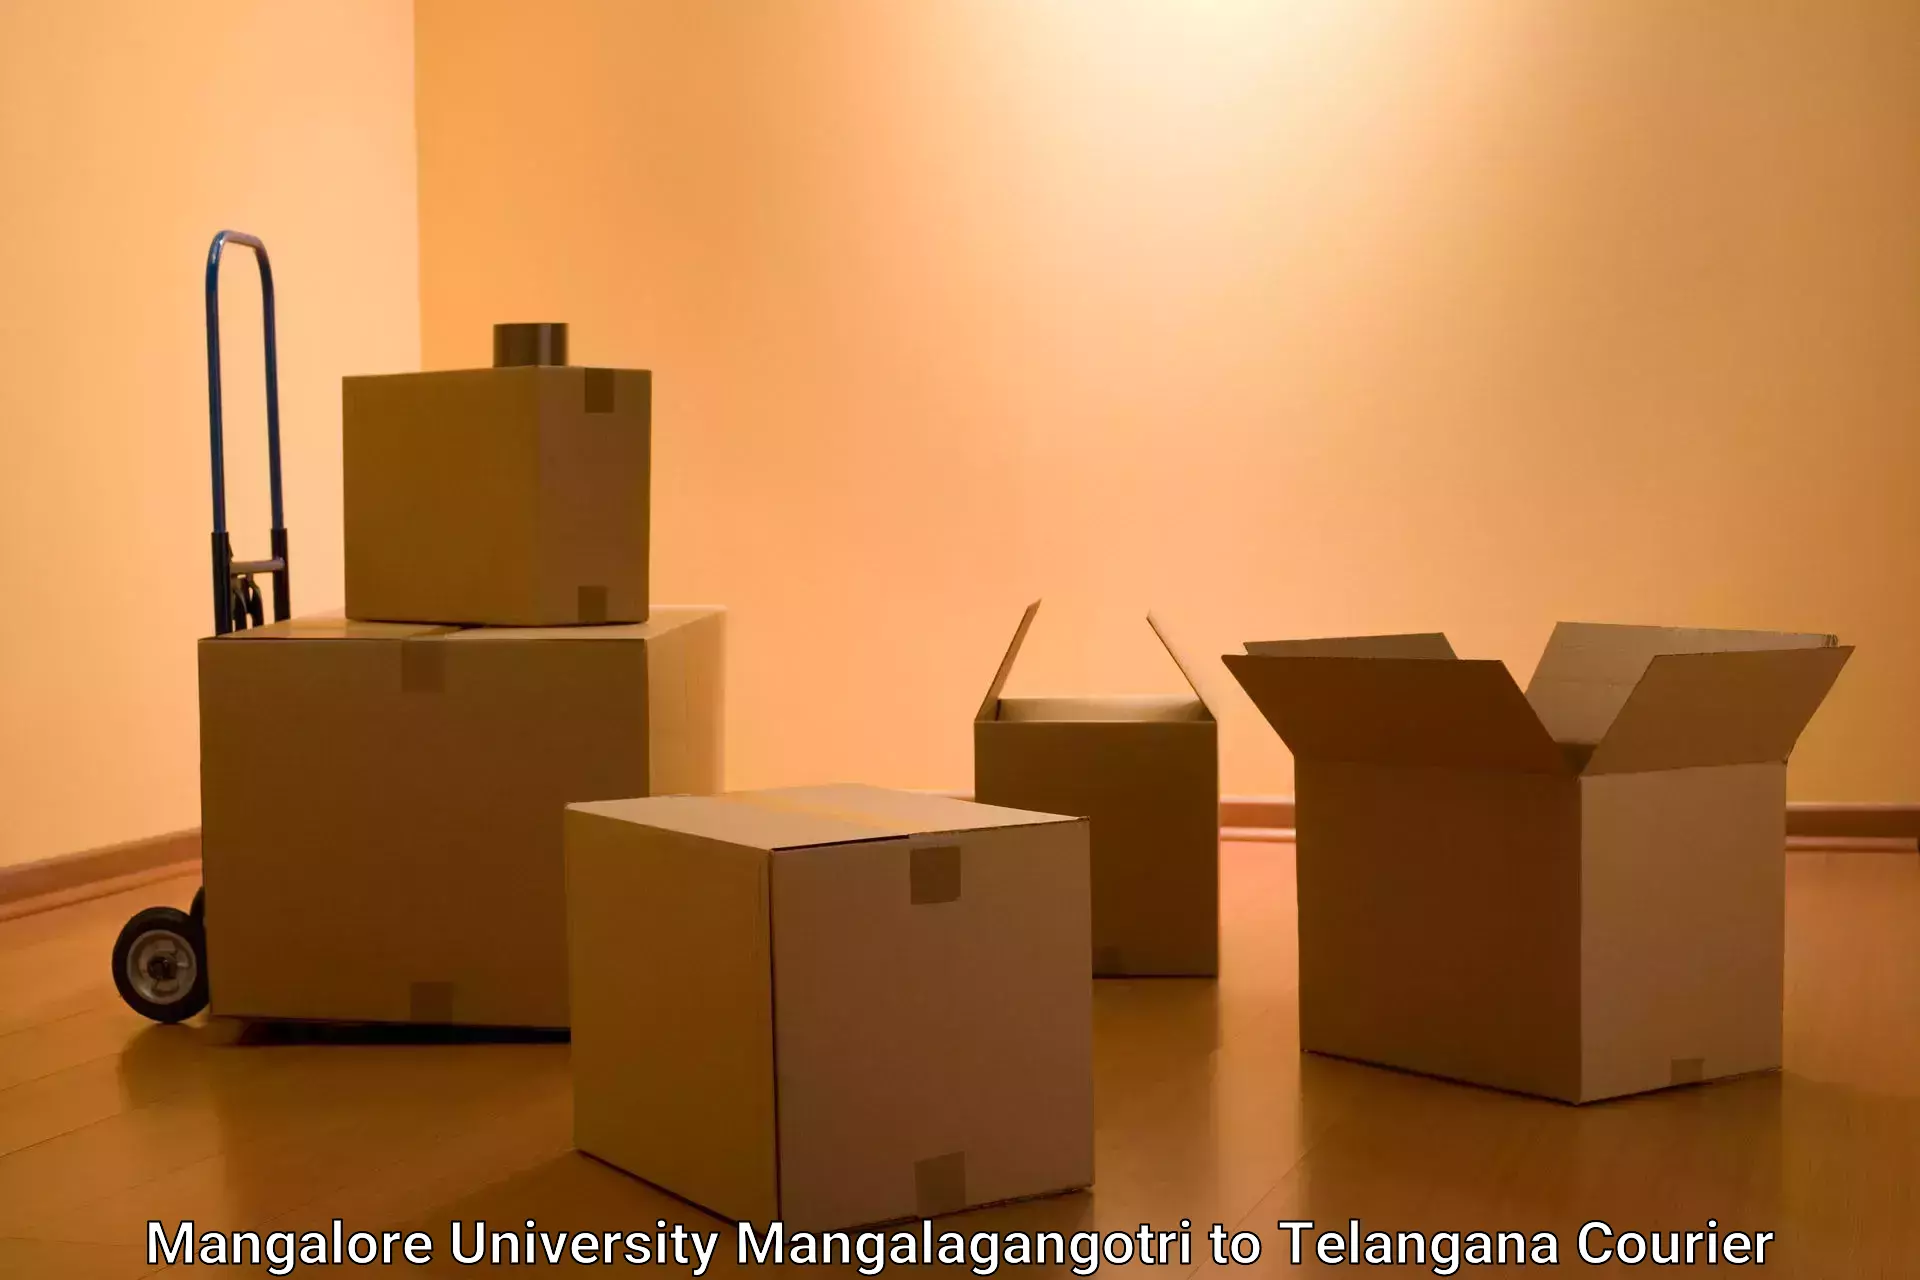 Professional parcel services Mangalore University Mangalagangotri to Adilabad